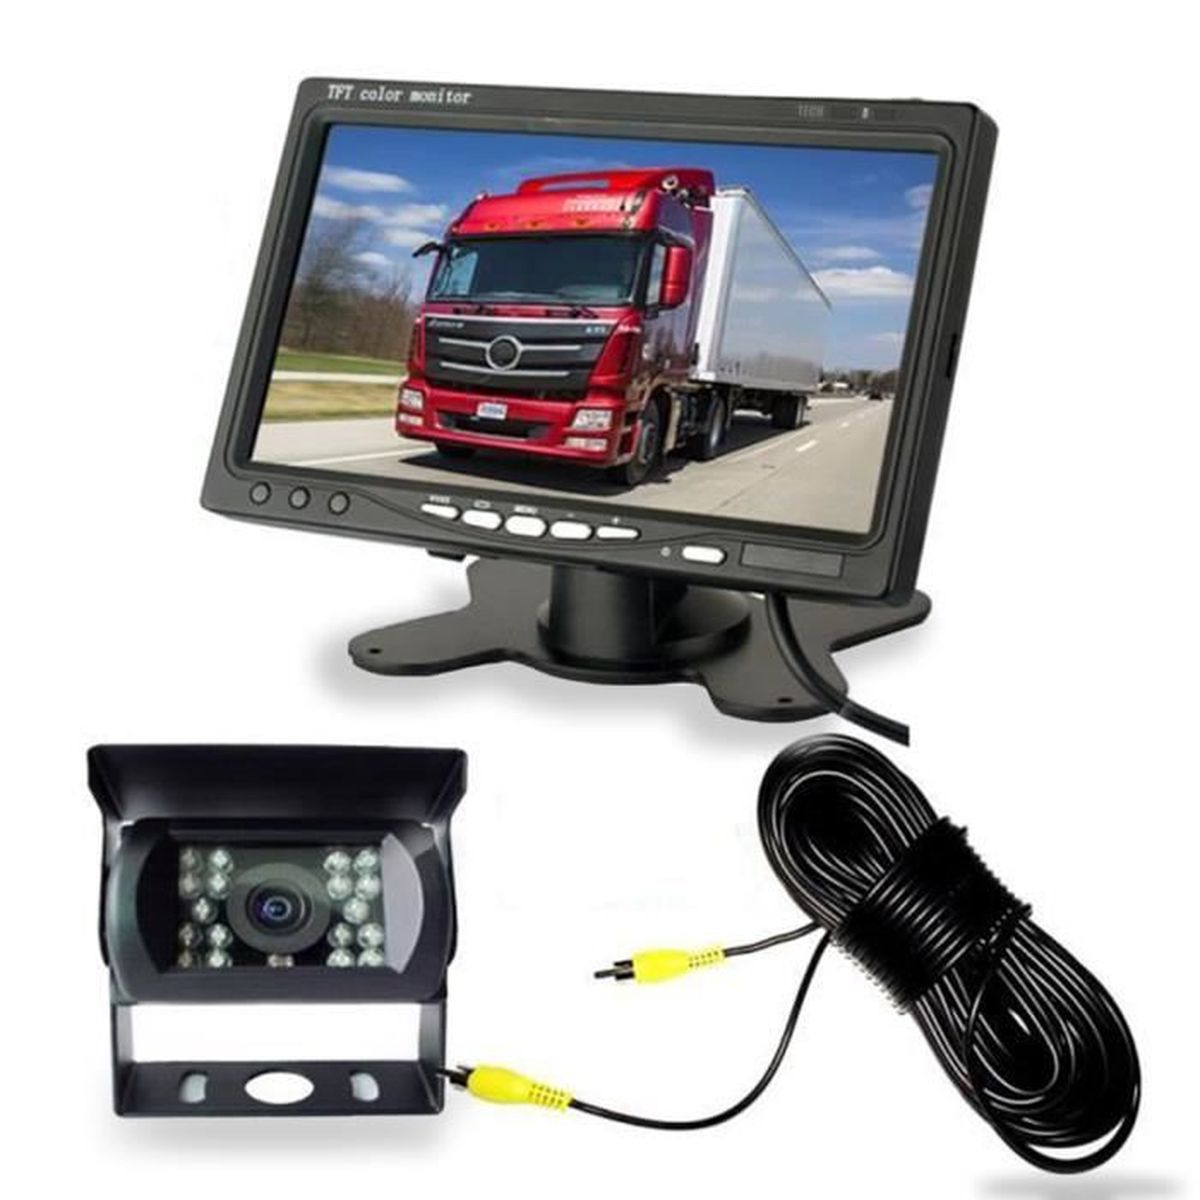 Caméra de Recul Voiture sans Fil 7 Pouces TFT LCD Miroir Moniteur 18 LEDs Vision Nocturne Étanche Caméra Arrière Inversée pour Camion Remorque RV Bus Camping-car. 